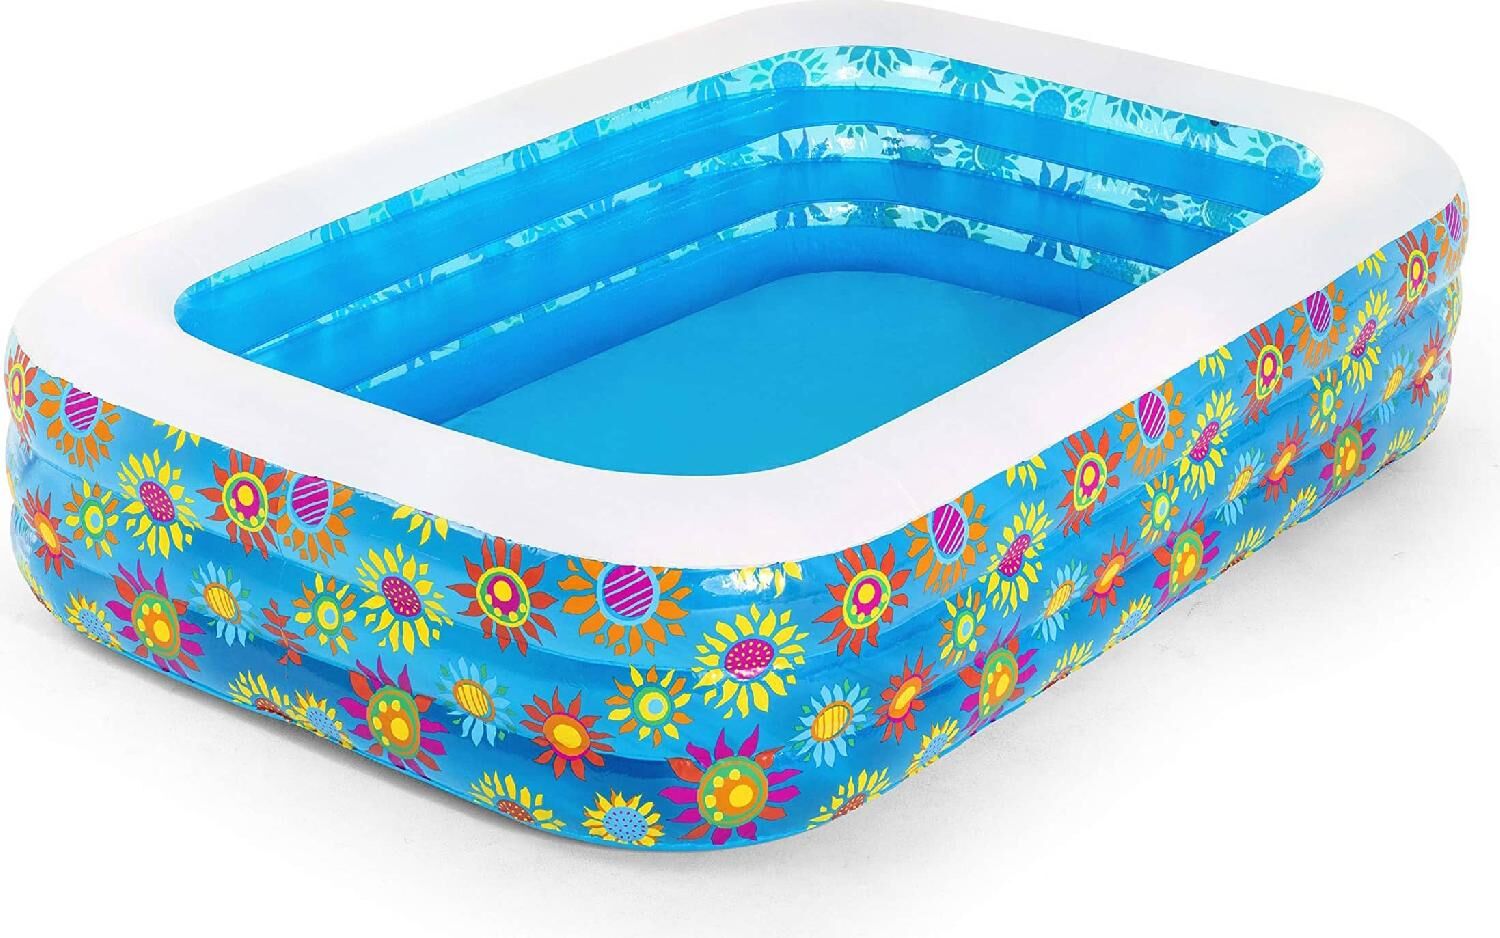 bestway 54121 piscina gonfiabile da giardino per bambini 300x183x56 cm - 54121